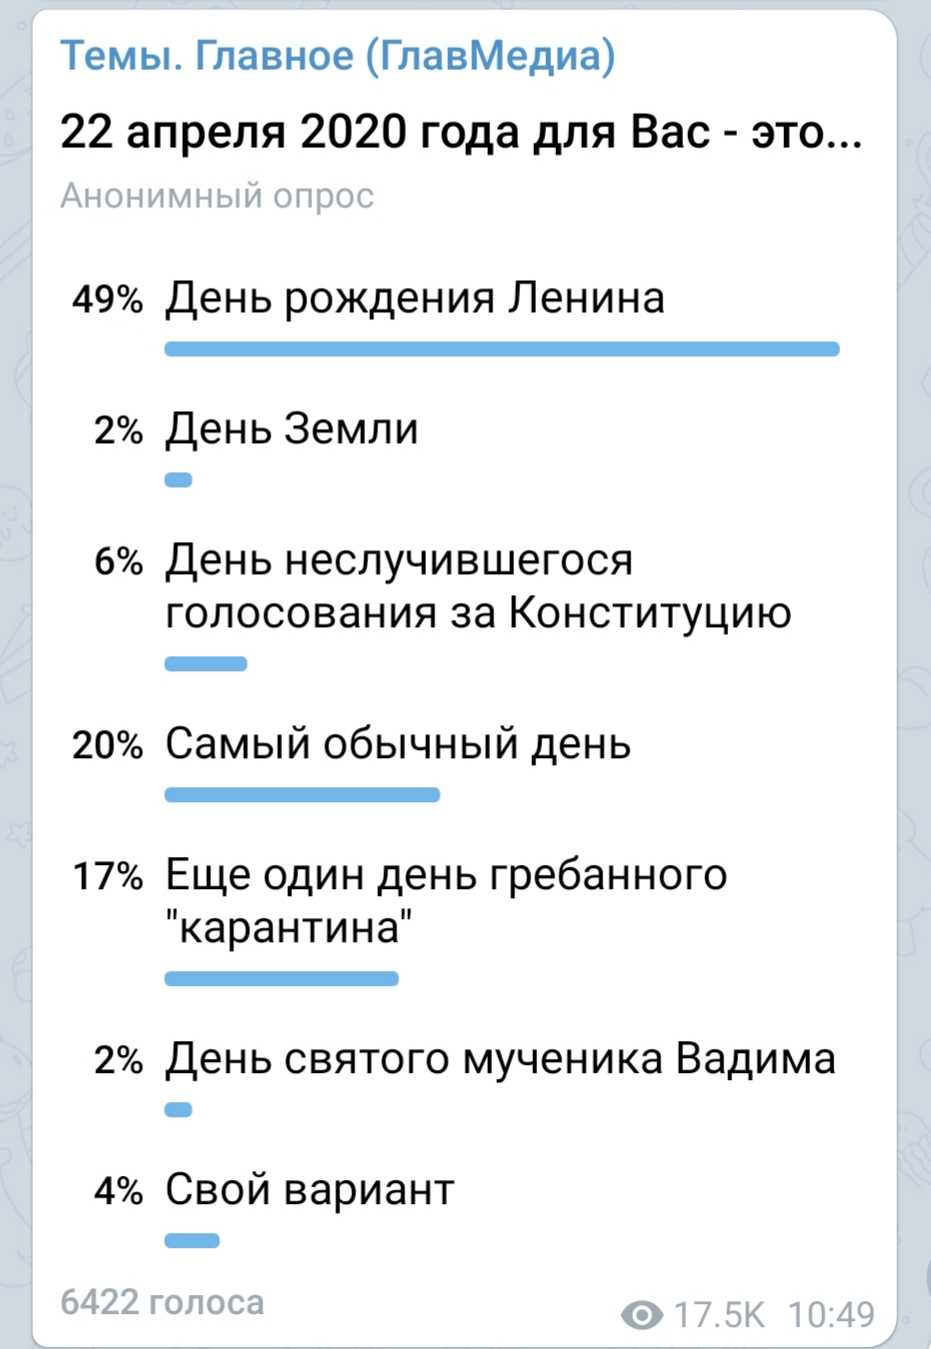 Опрос в день 150-летия Ленина в Telegram-канале ГлавМедиа